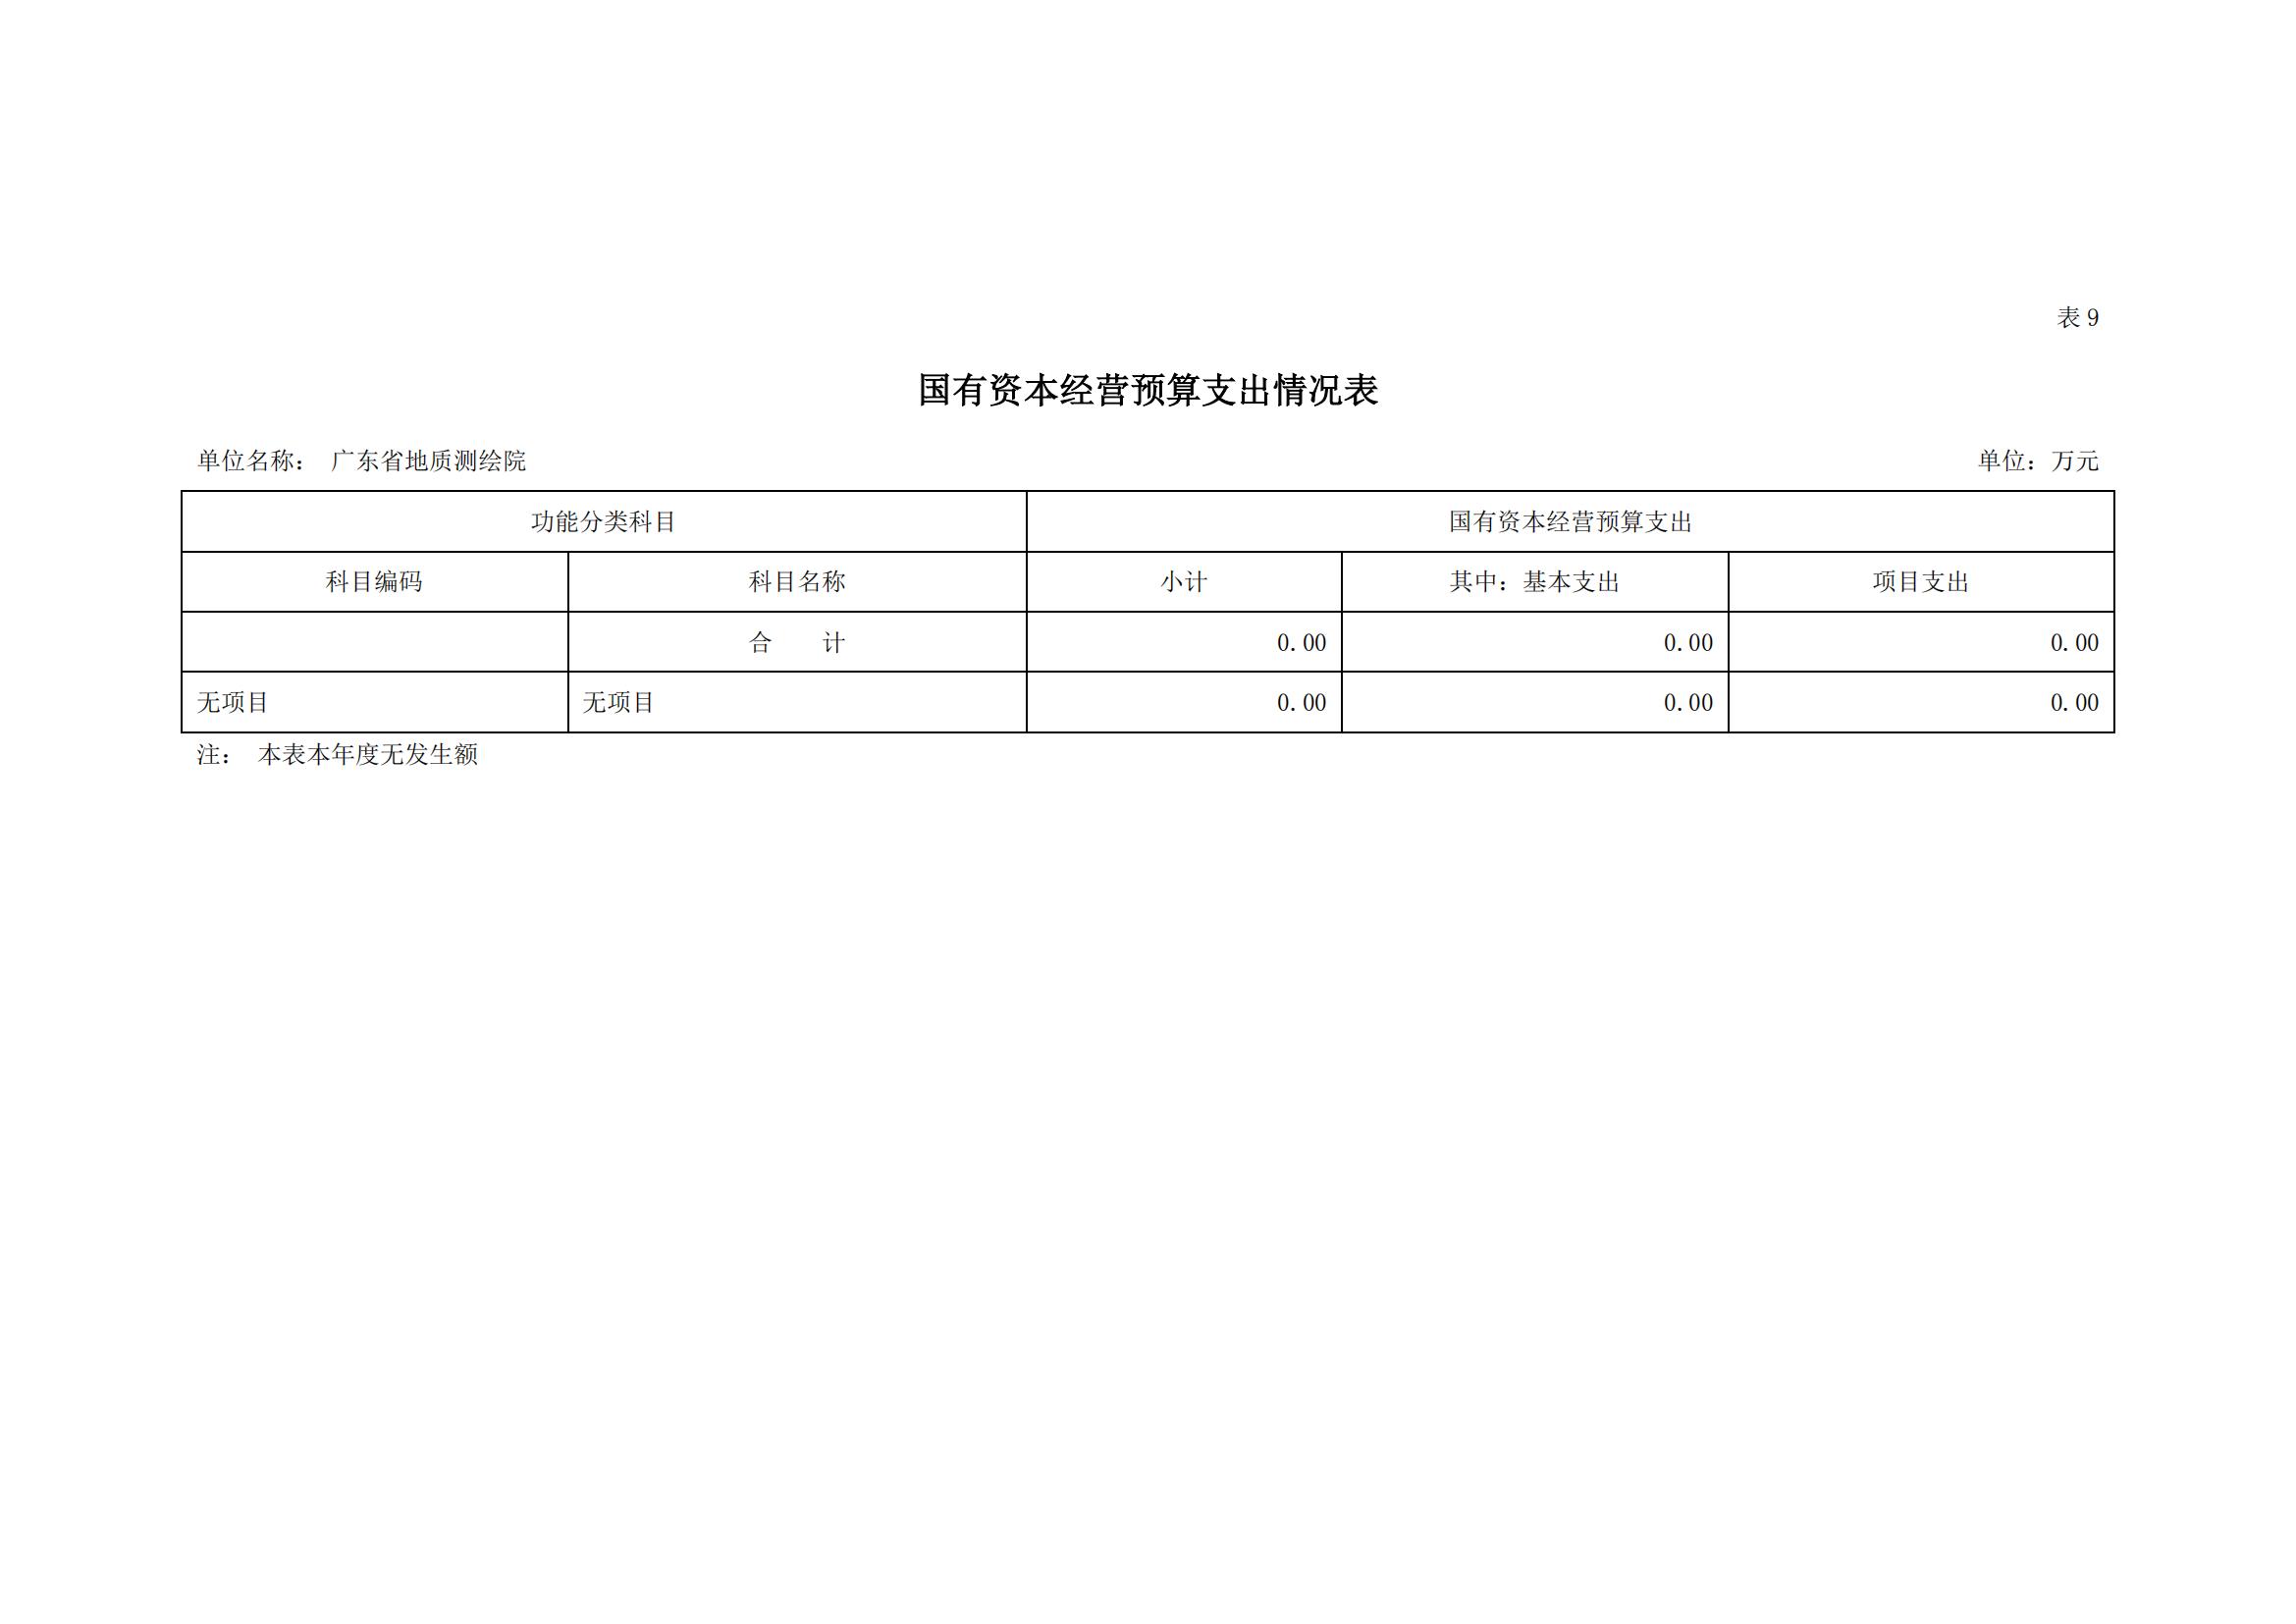 2021年广东省地质测绘院部门预算公开_15.jpg